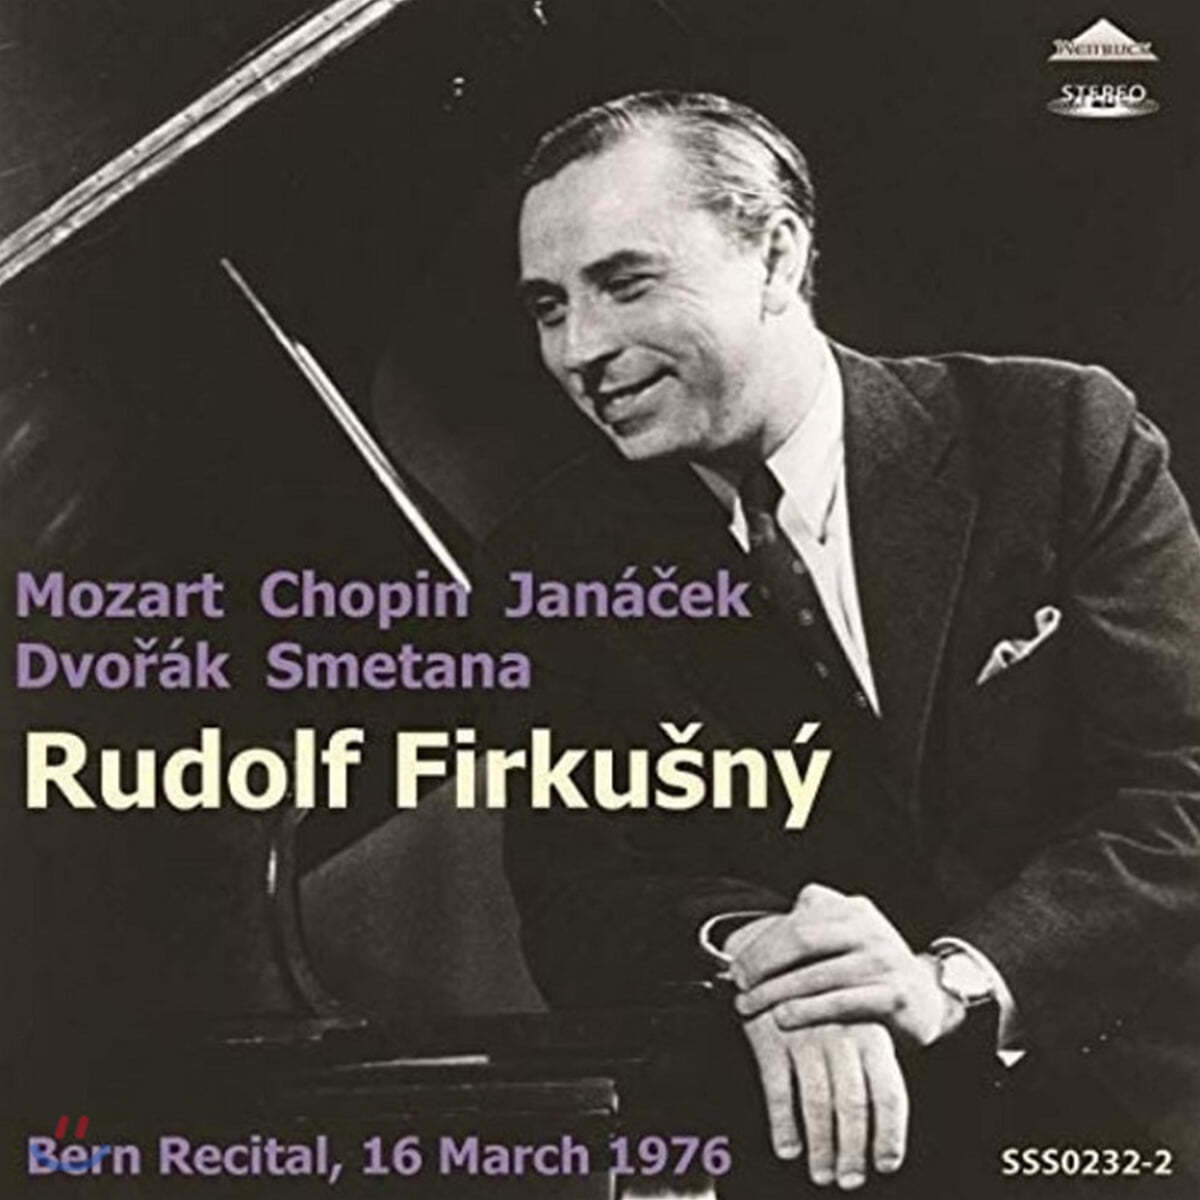 루돌프 피르쿠츠니 베른 연주회 녹음집 (Rudolf Firkusny Bern Recital, 16 March 1976)